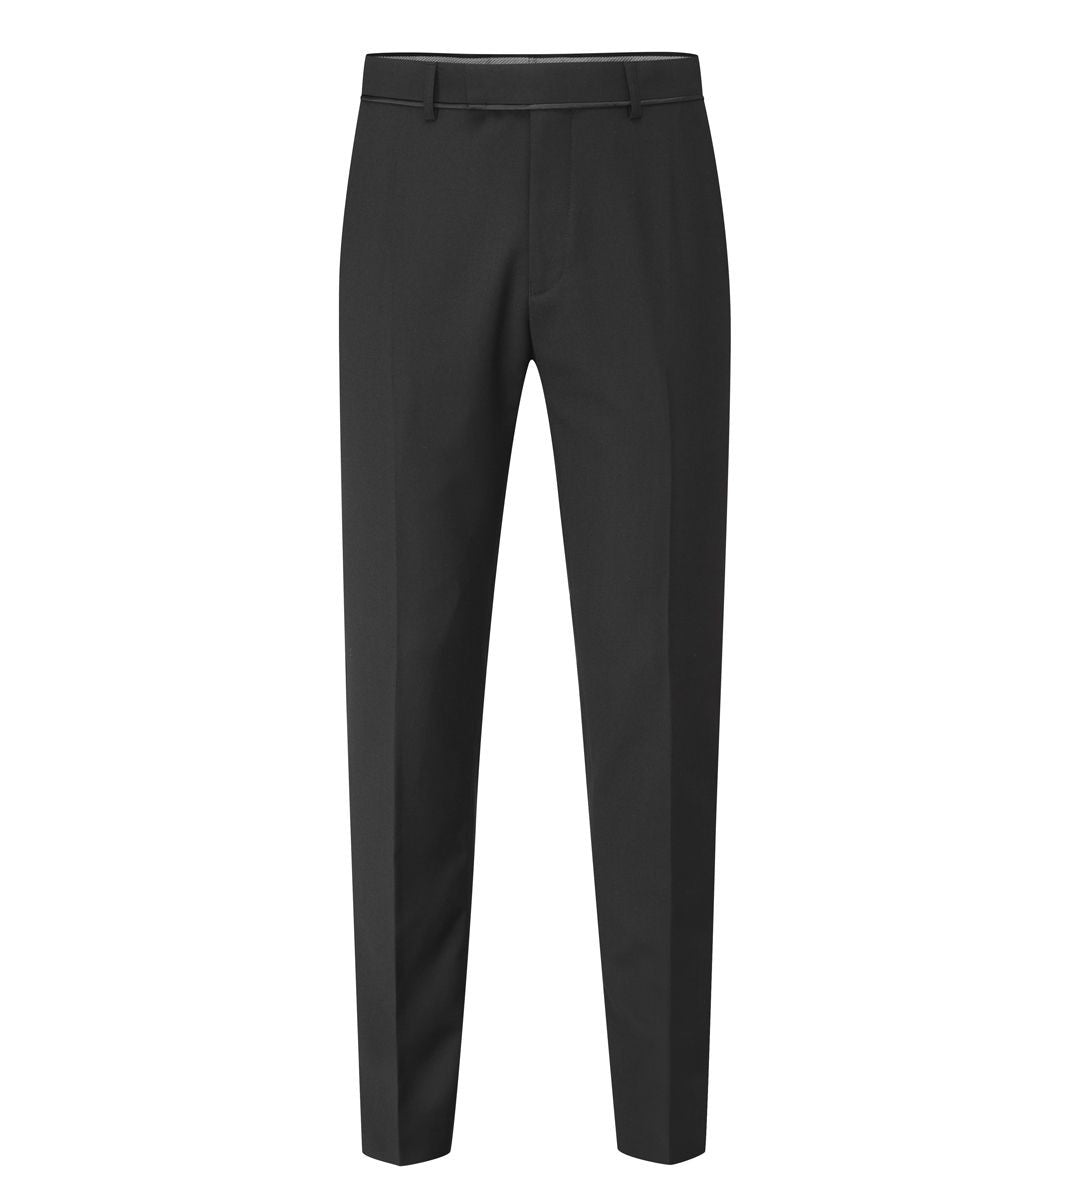 Skopes Dinner Suit Trousers Black Long Length